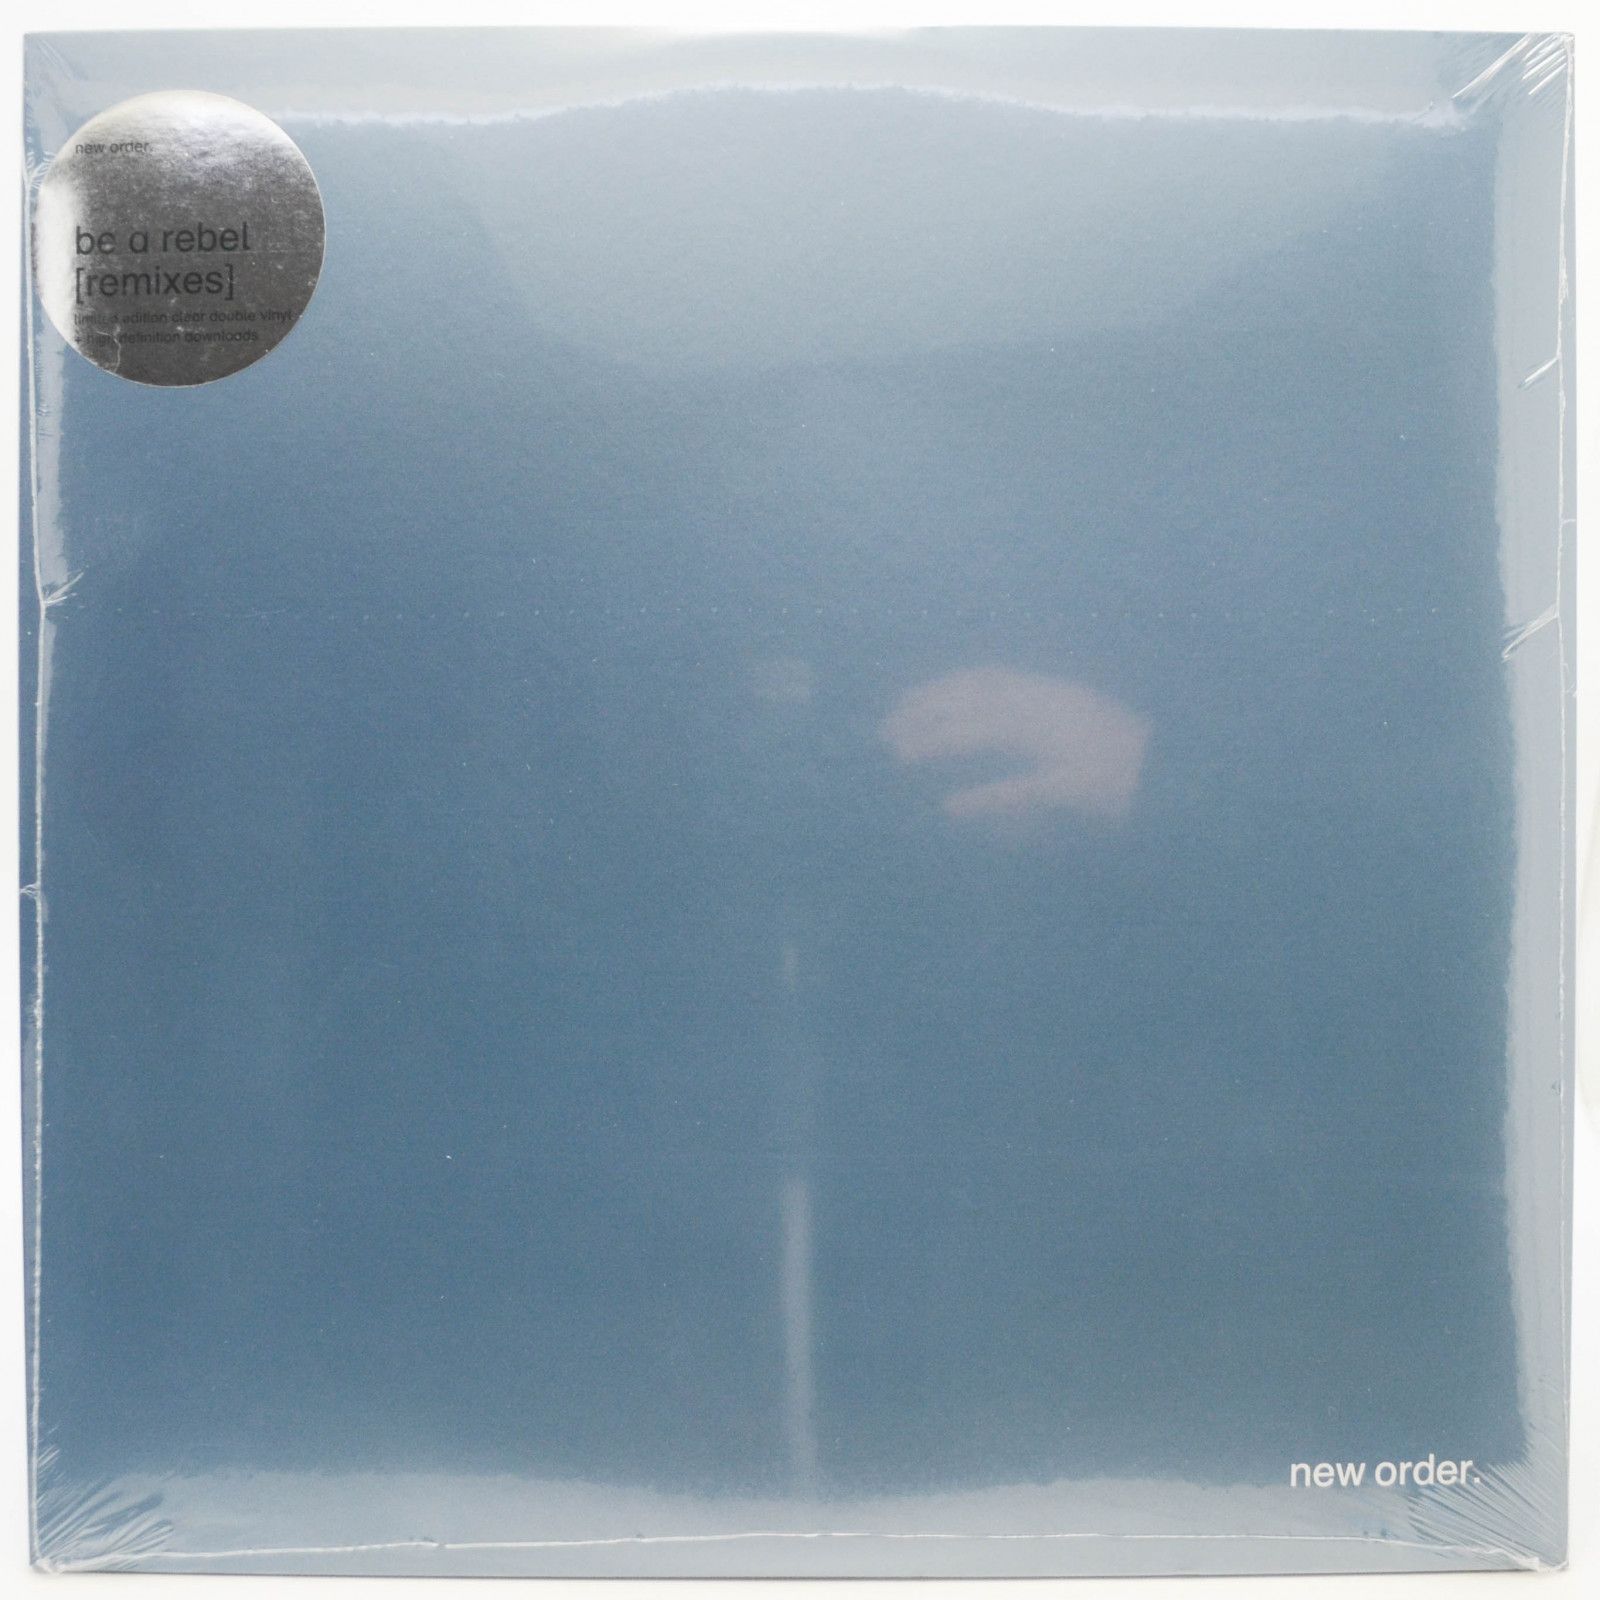 New Order — Be A Rebel (Remixes) (2LP), 2020